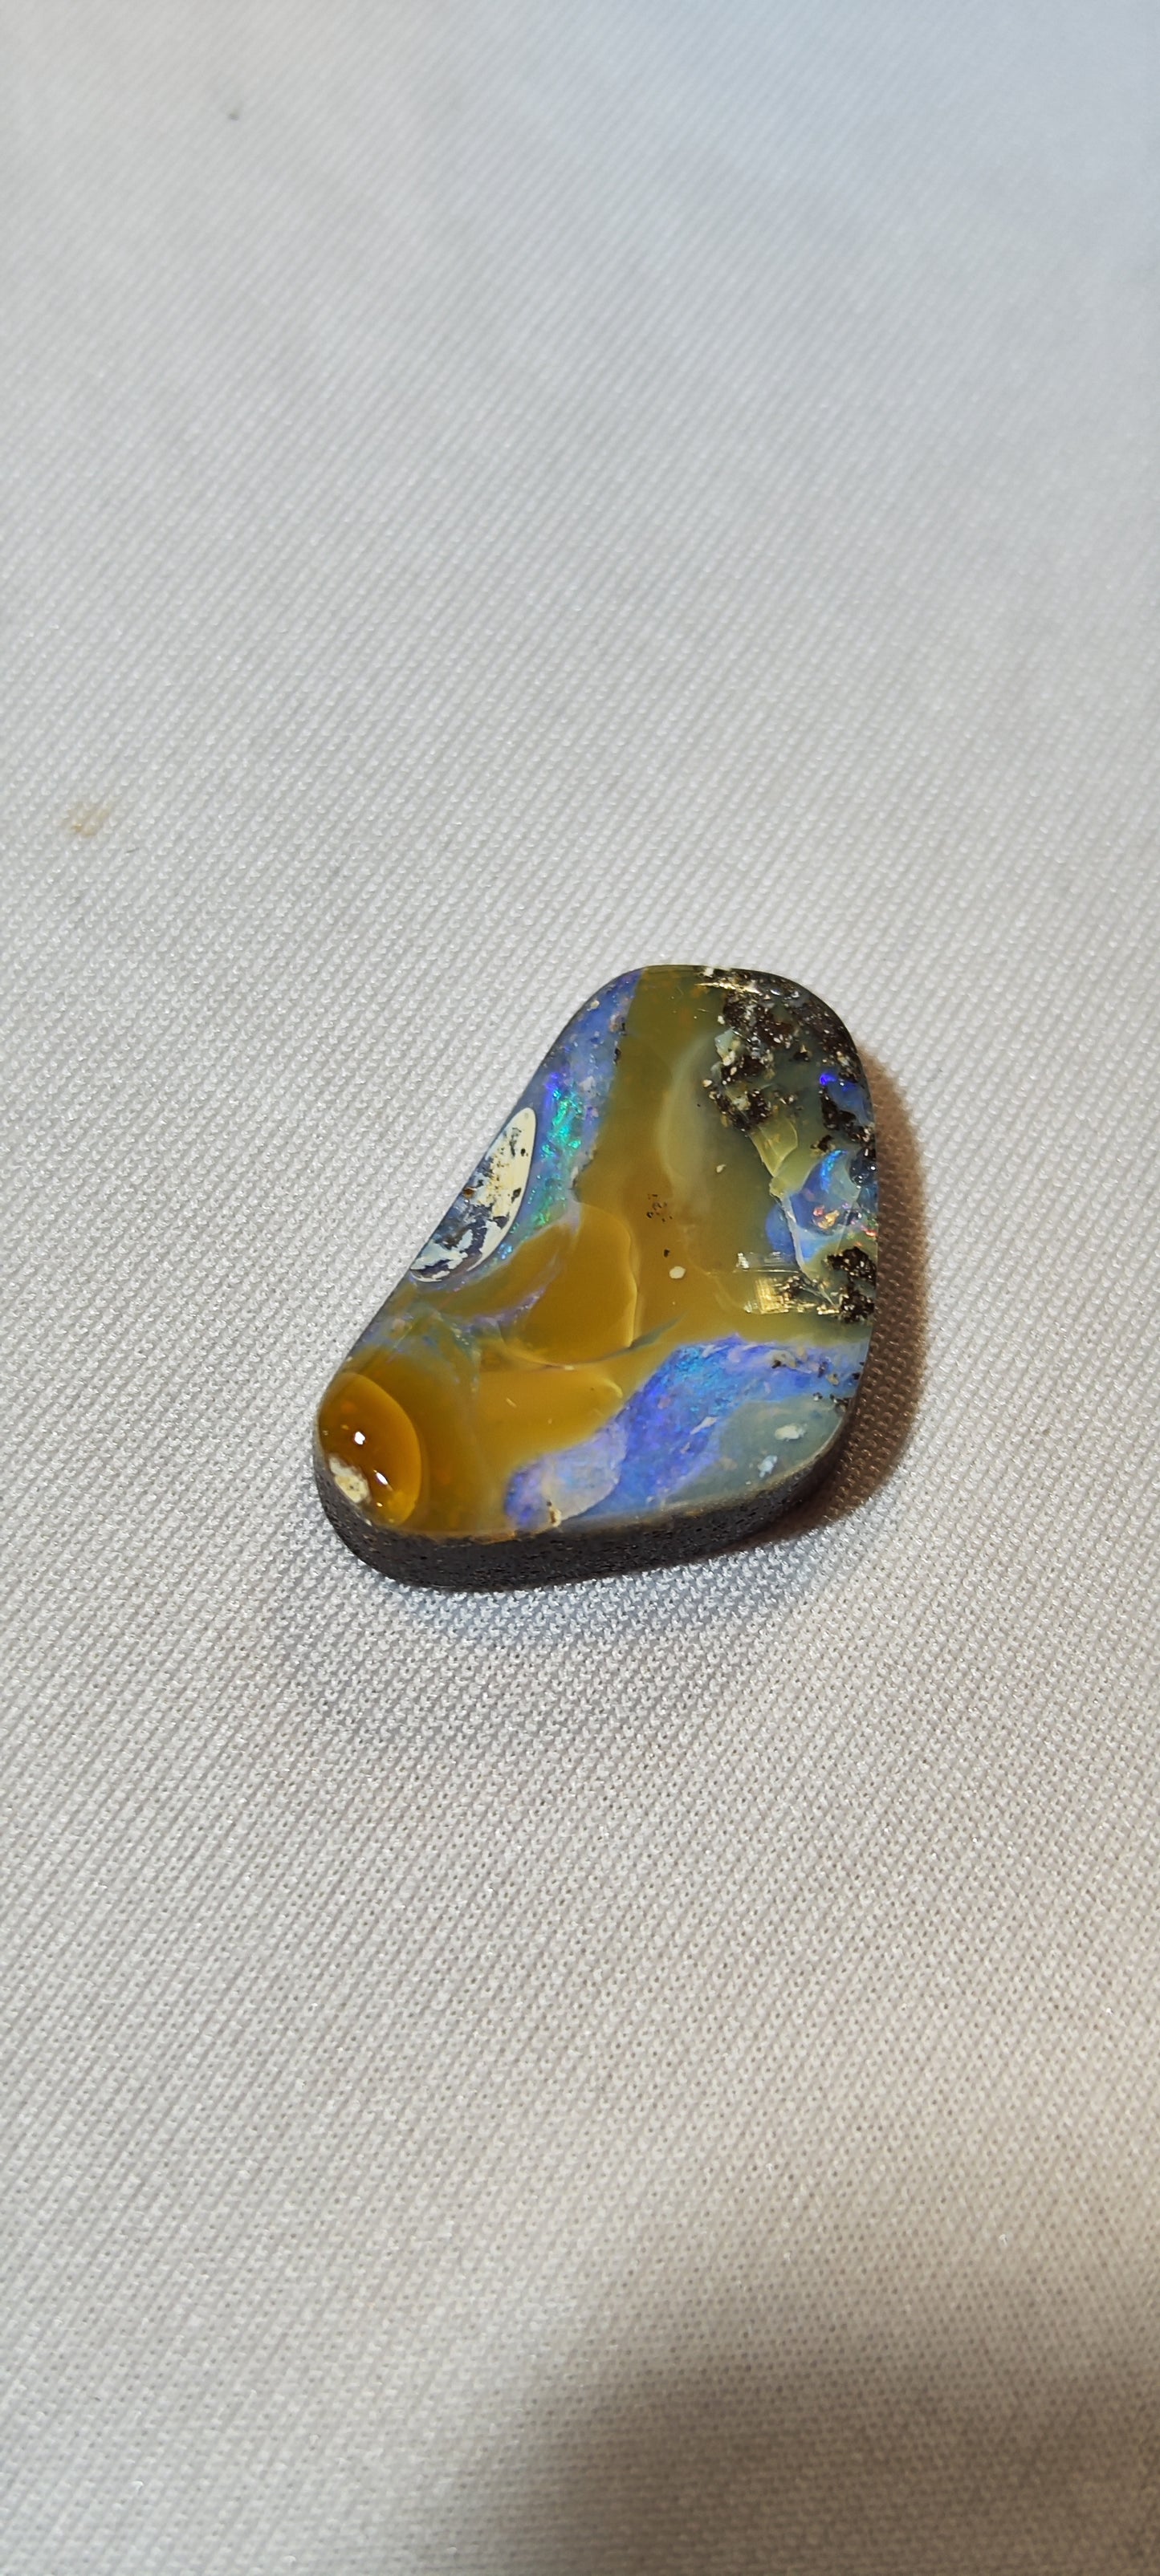 Opale boulder specimen